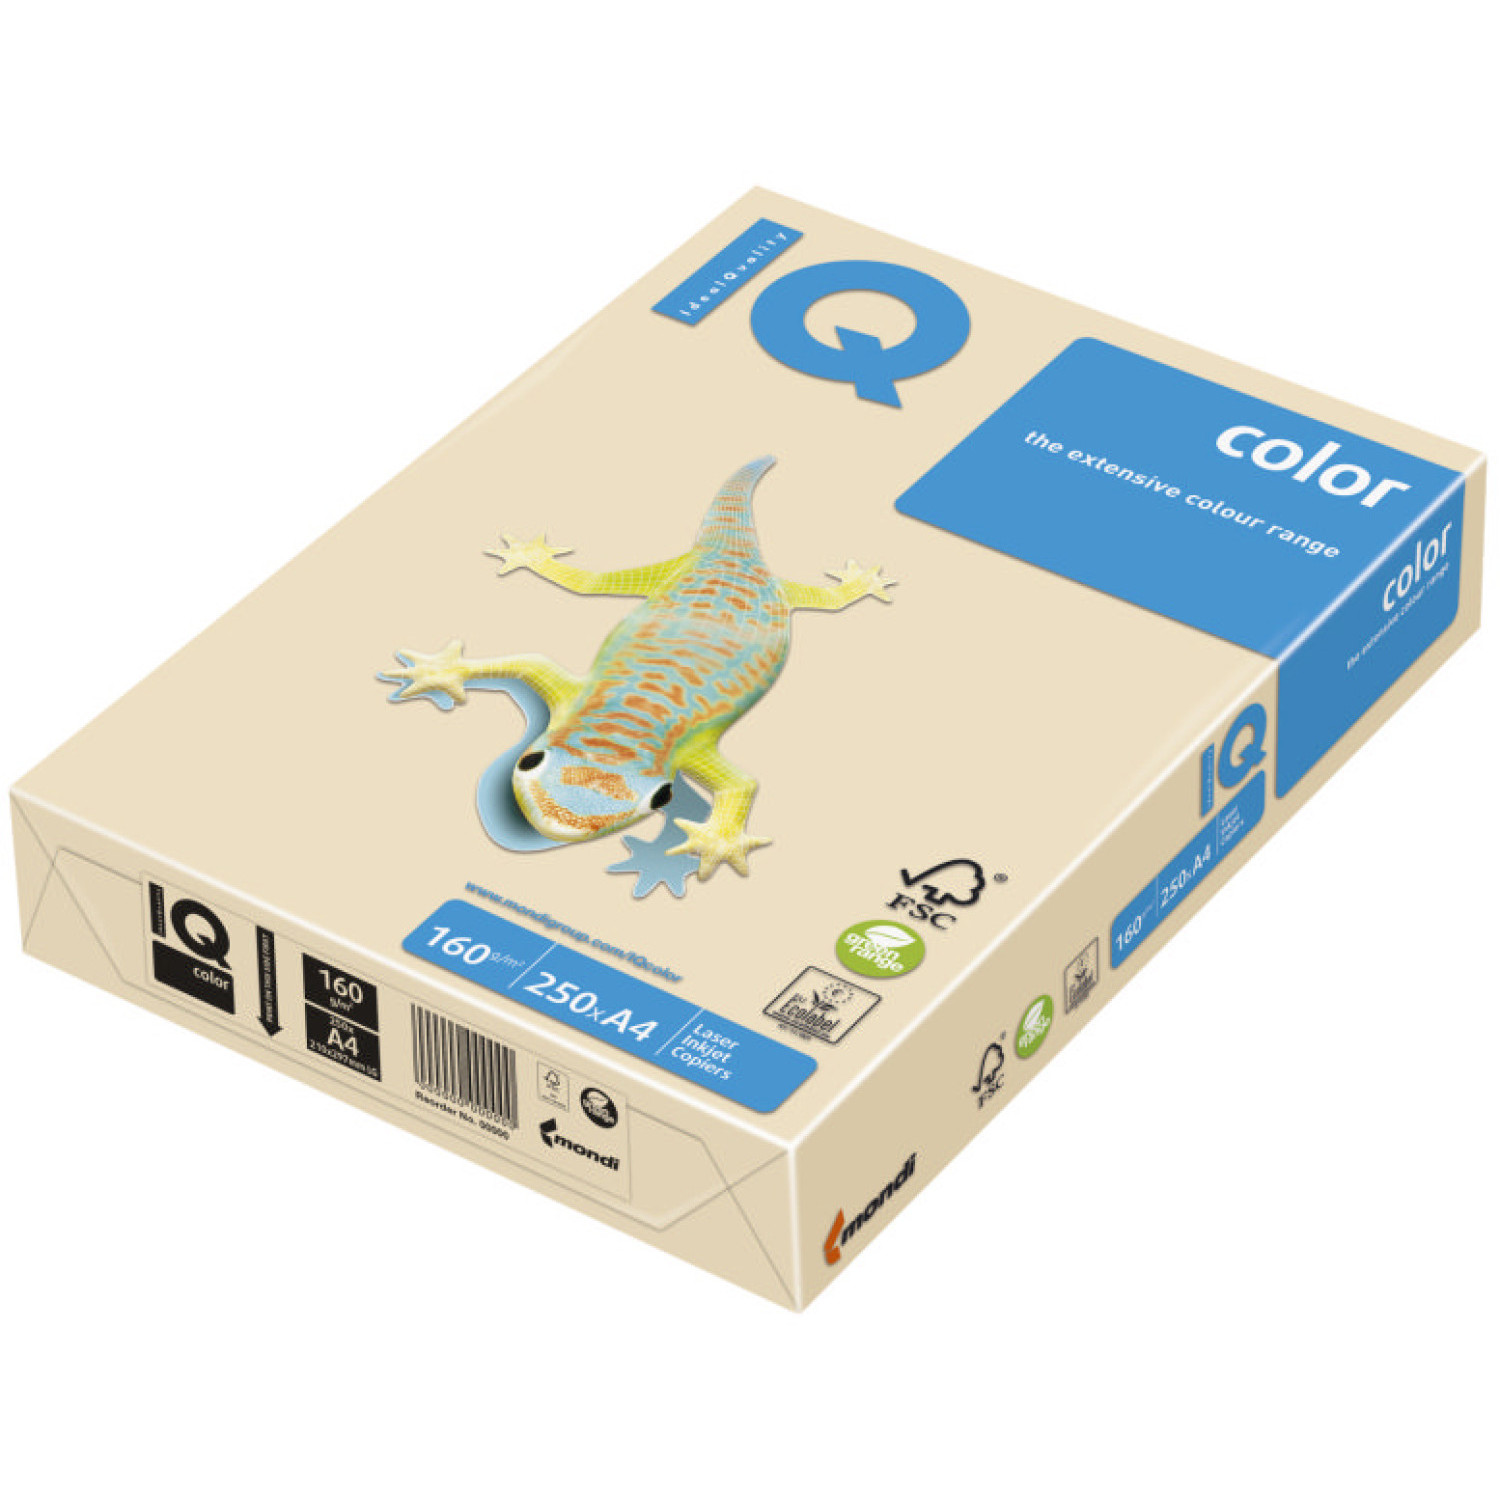 Копирен картон IQ CR20, 160 гр., слонова кост